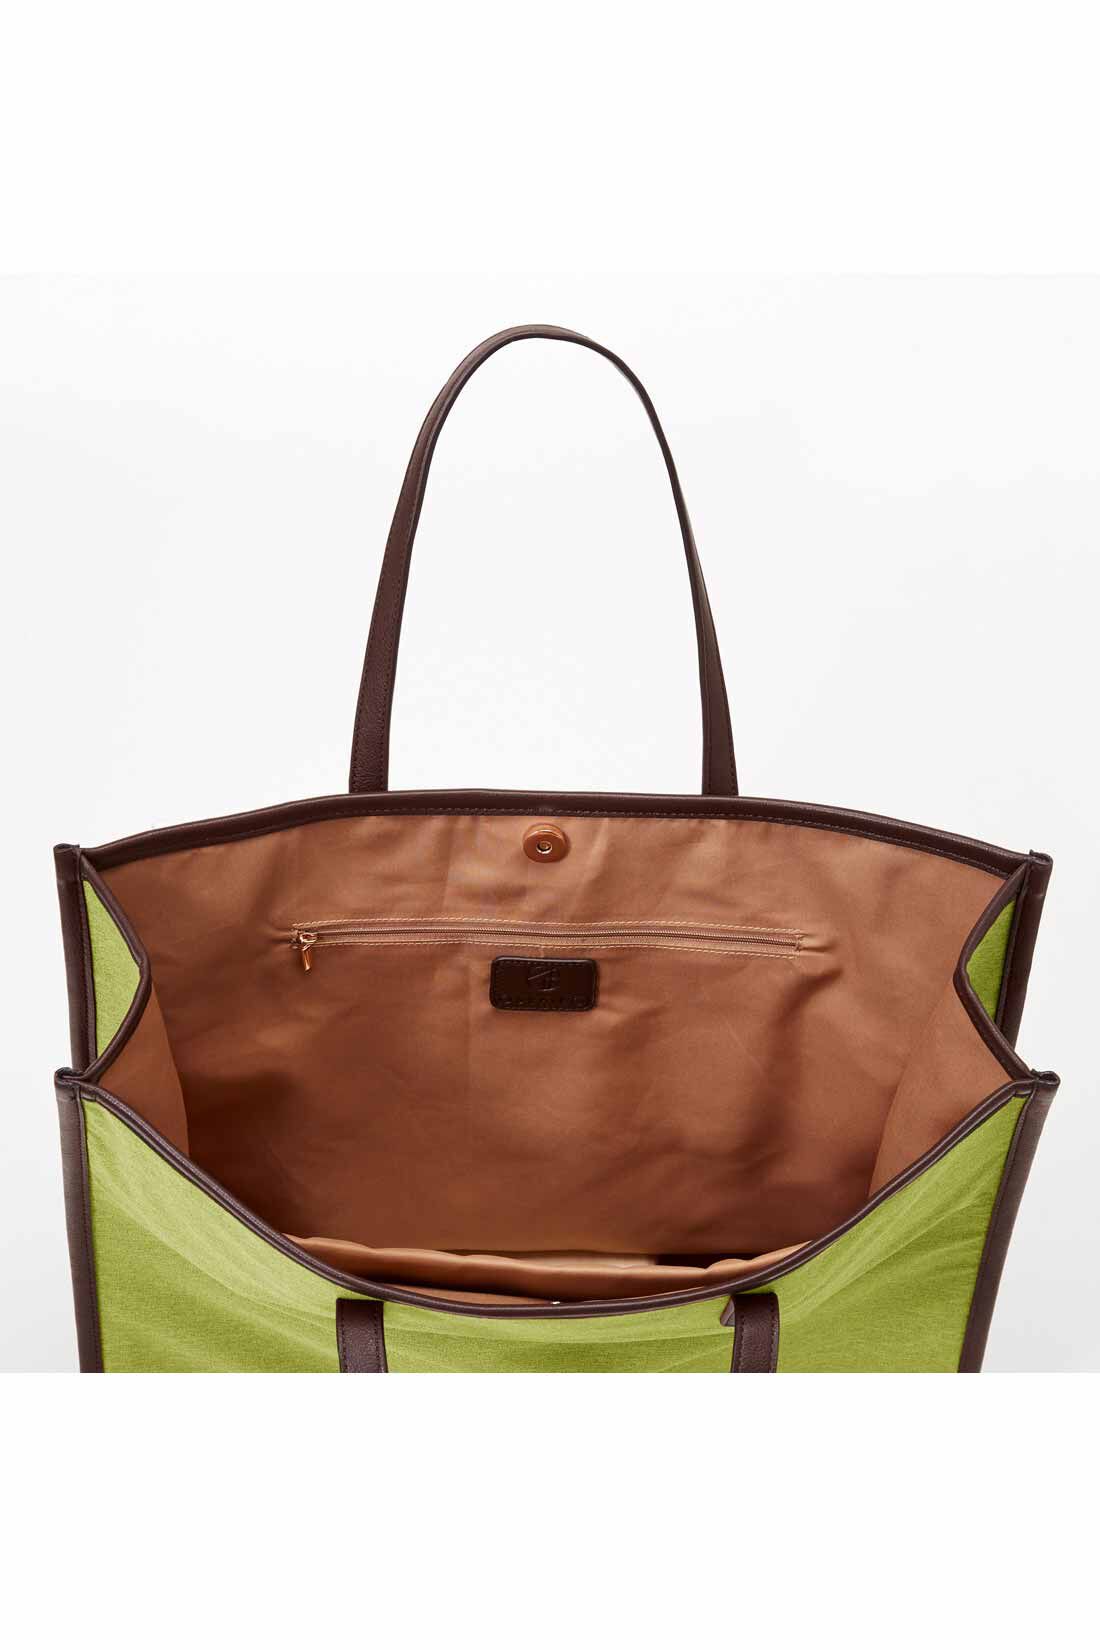 Real Stock|OSYAIRO ジャンボうちわが入るパイピングトートバッグ〈グリーン〉|内側には浅めのファスナーポケットもついています。定期券やスマホなどを入れておけばバッグの中で迷子にならずに安心です。